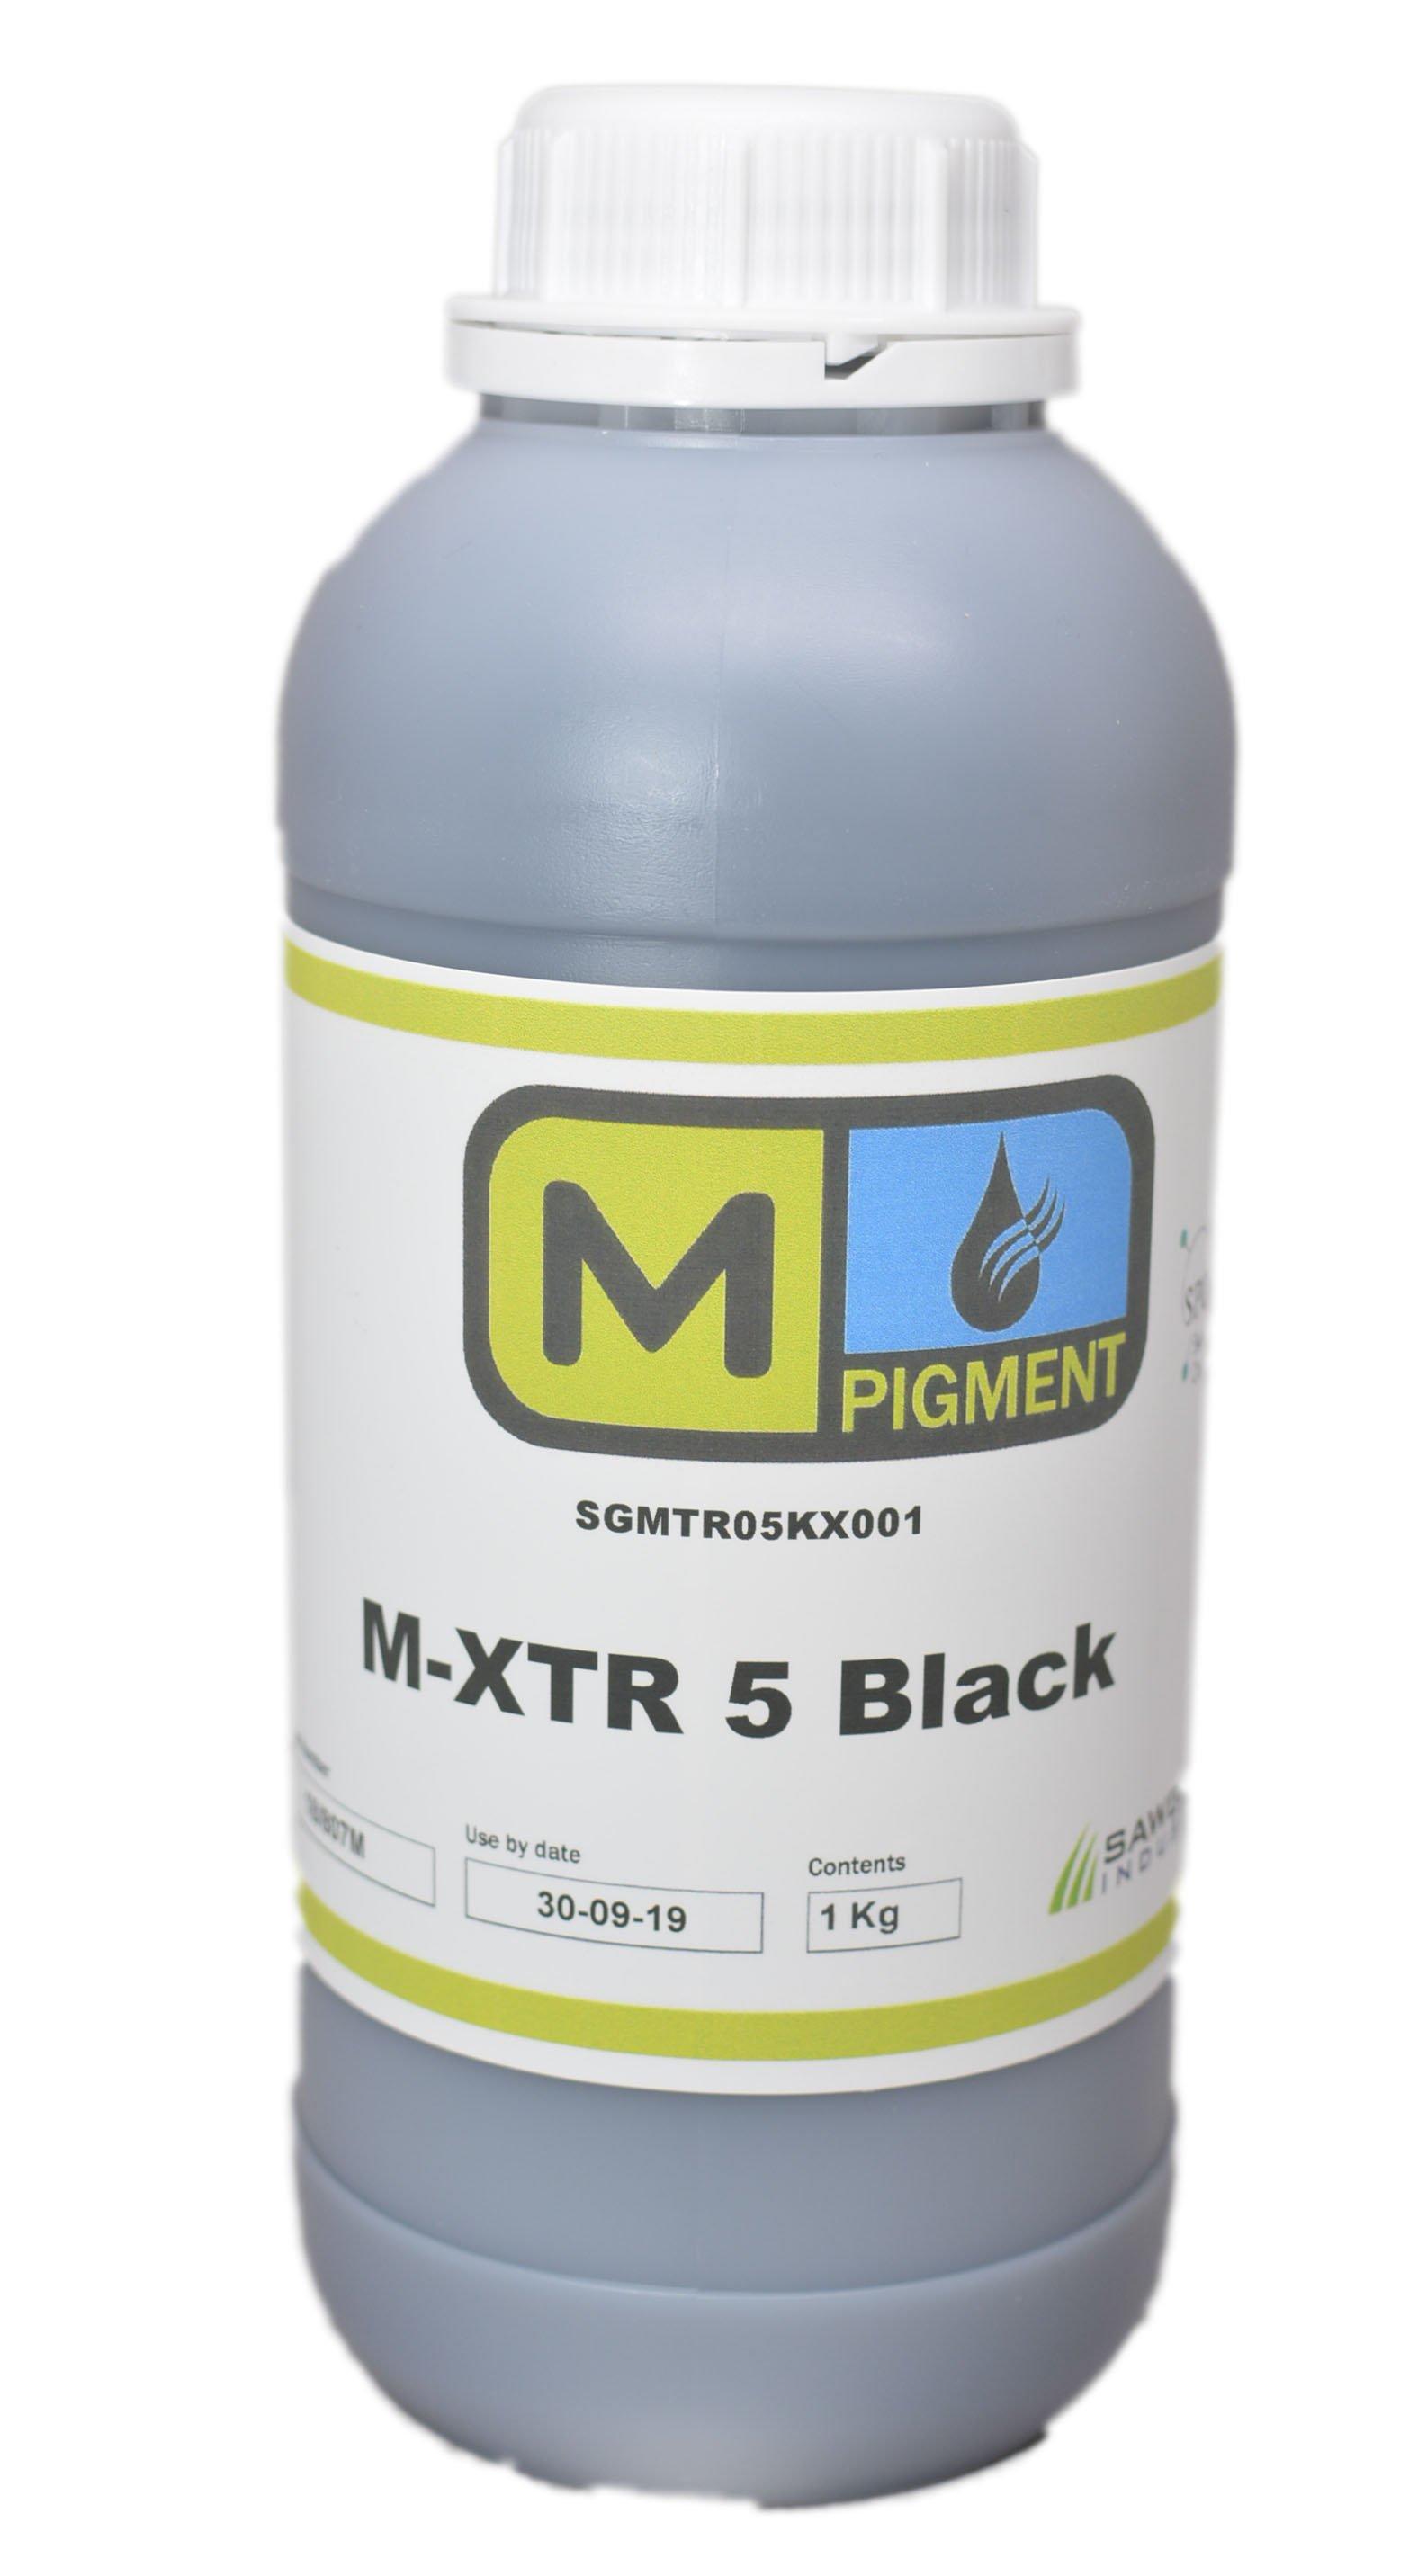 M-XTR5 Black Pigment Textile ink for Epson printheads DX4-DX7 - Rainbowjet Digital